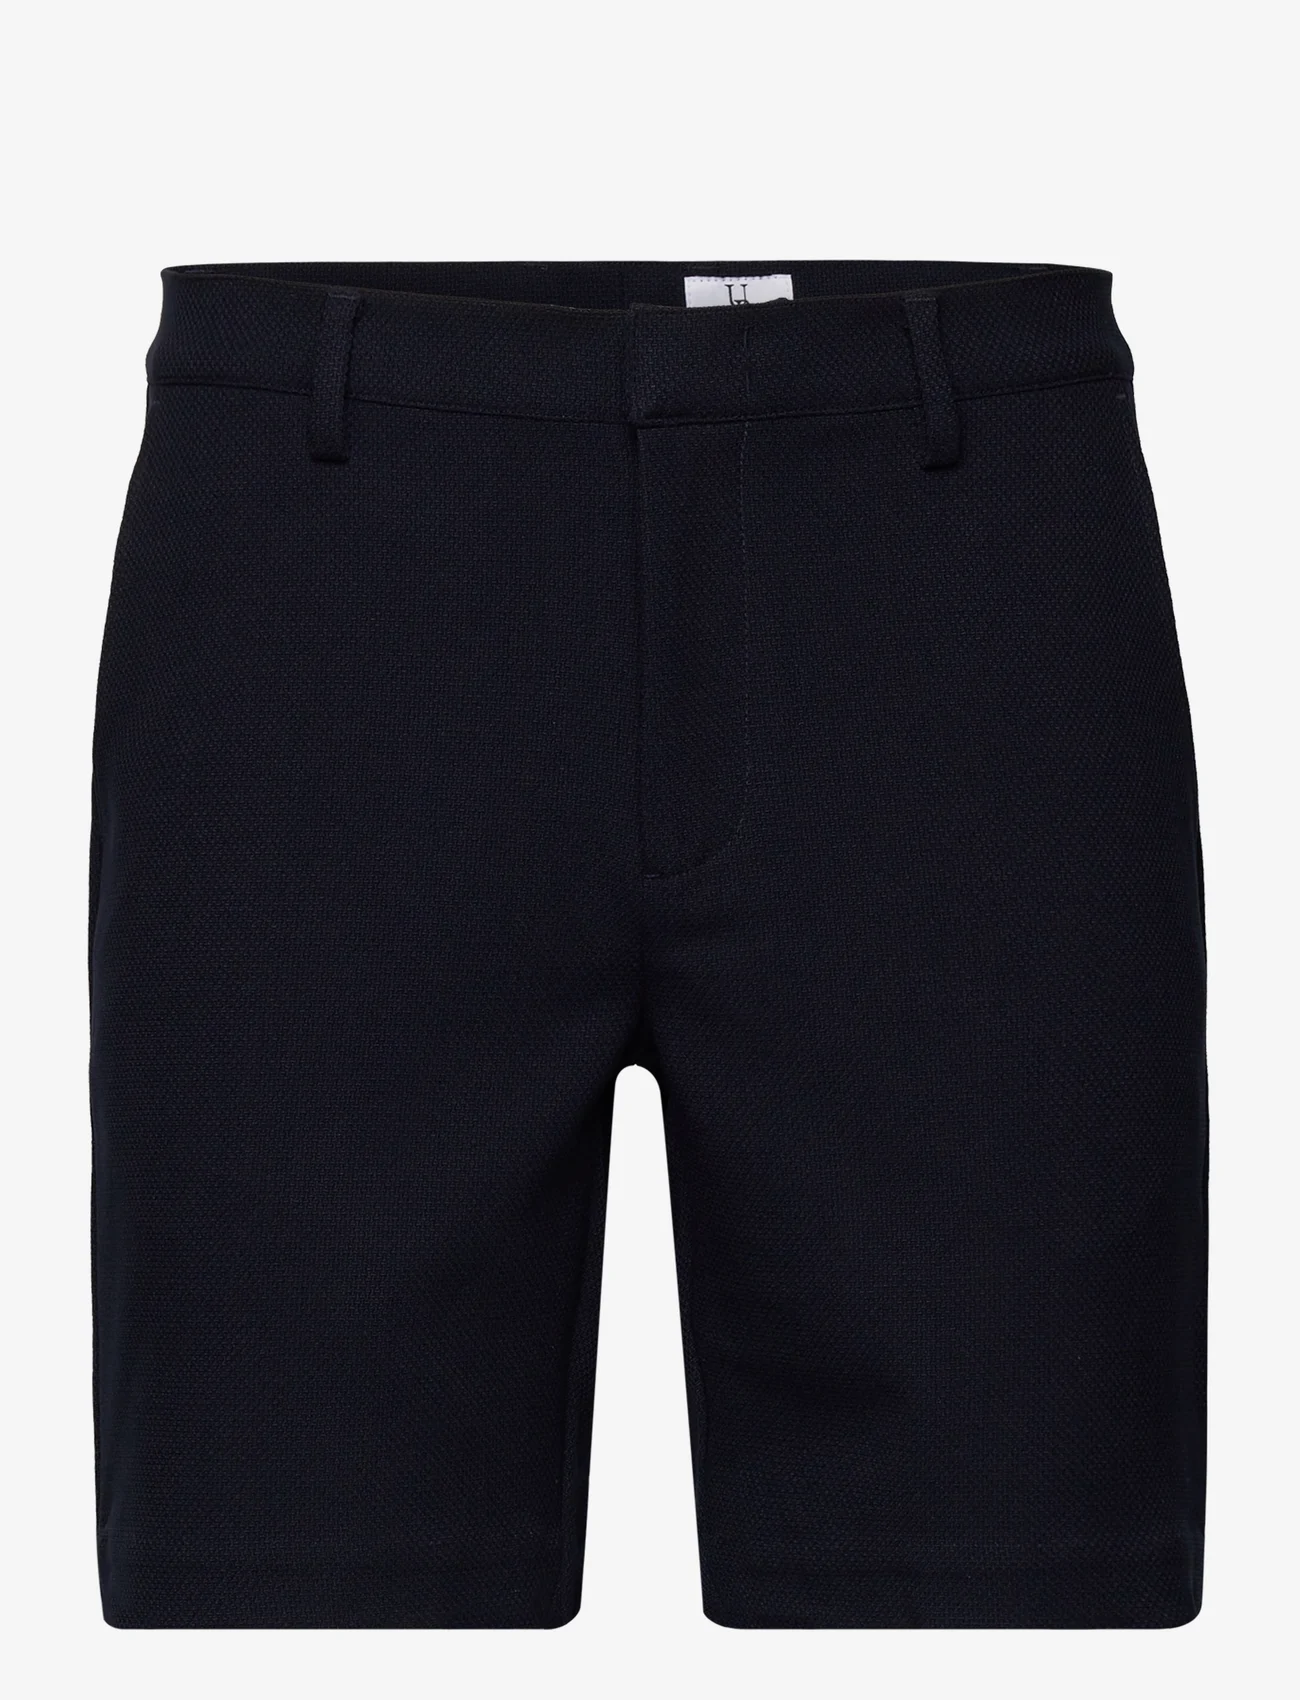 Urban Pioneers - Bate shorts - navy - 0